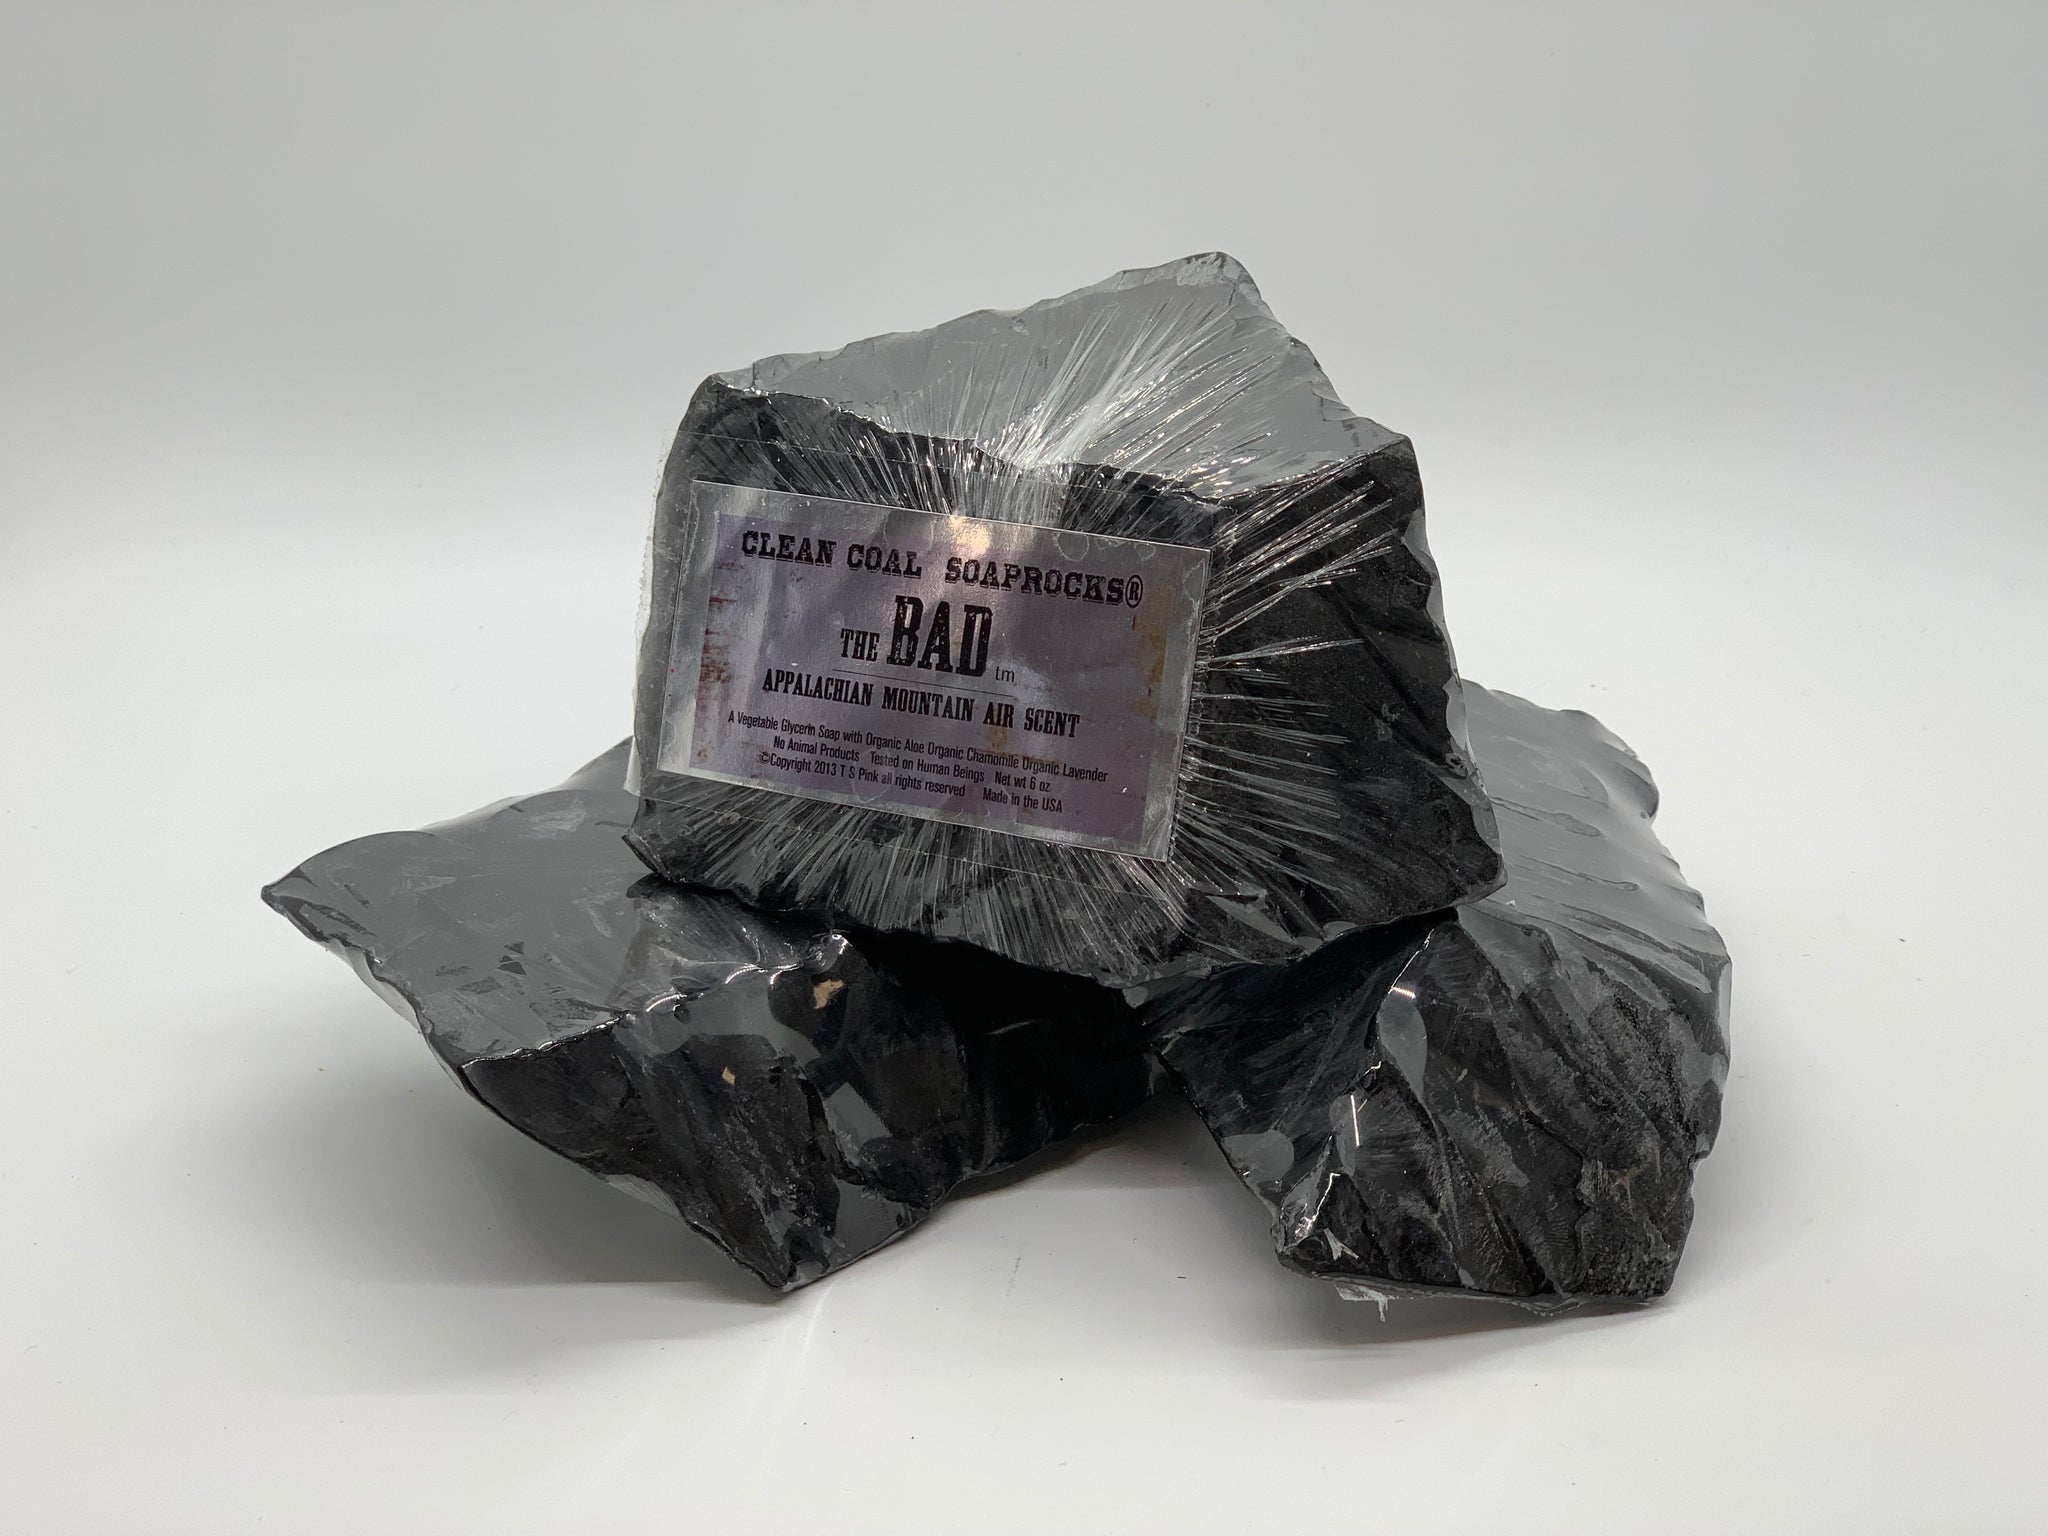 Coal Soap Rock